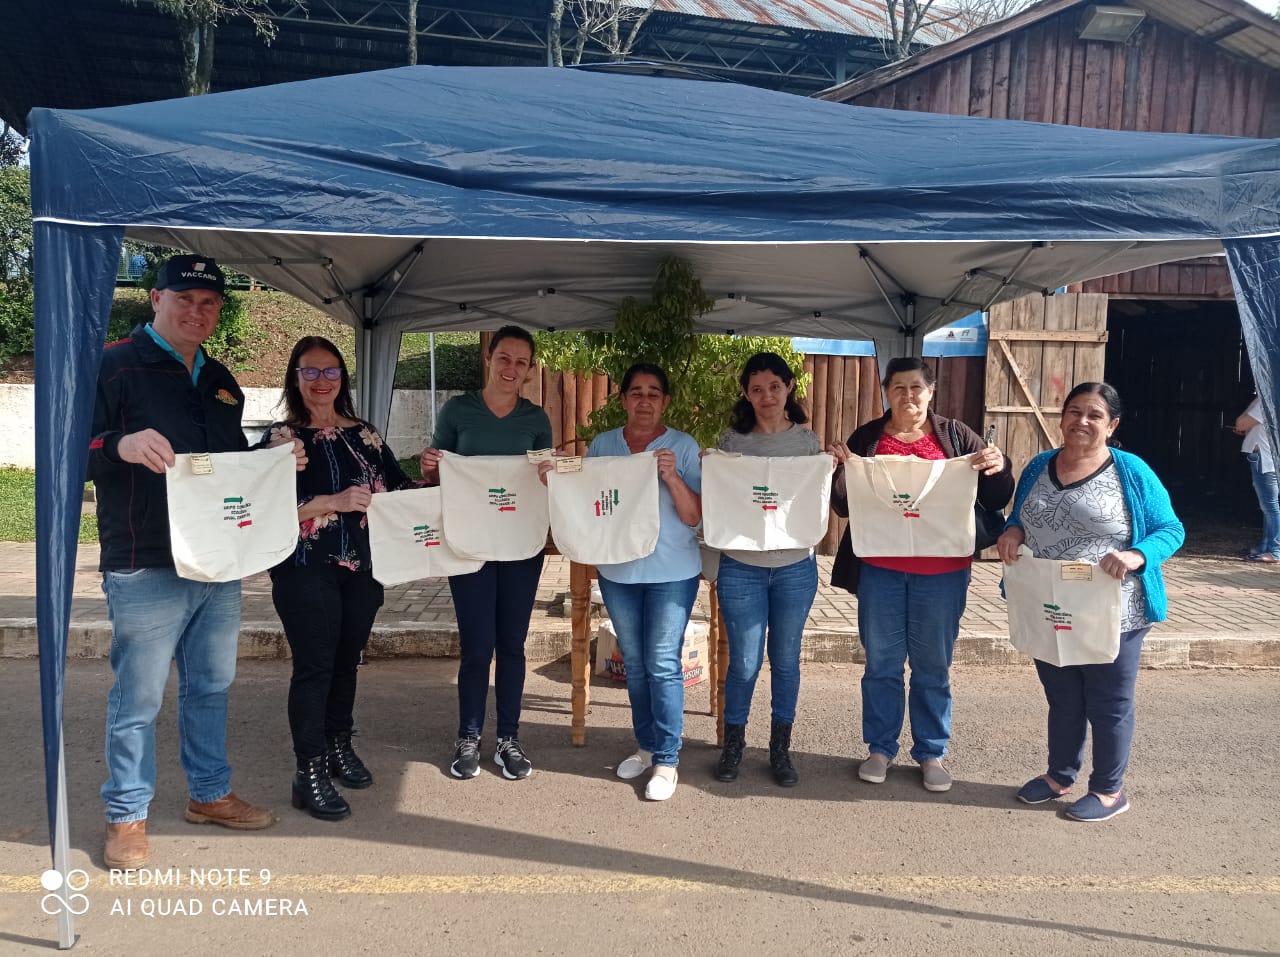 Voluntarias produzem e distribuem sacolas retornaveis em Erval Grande.